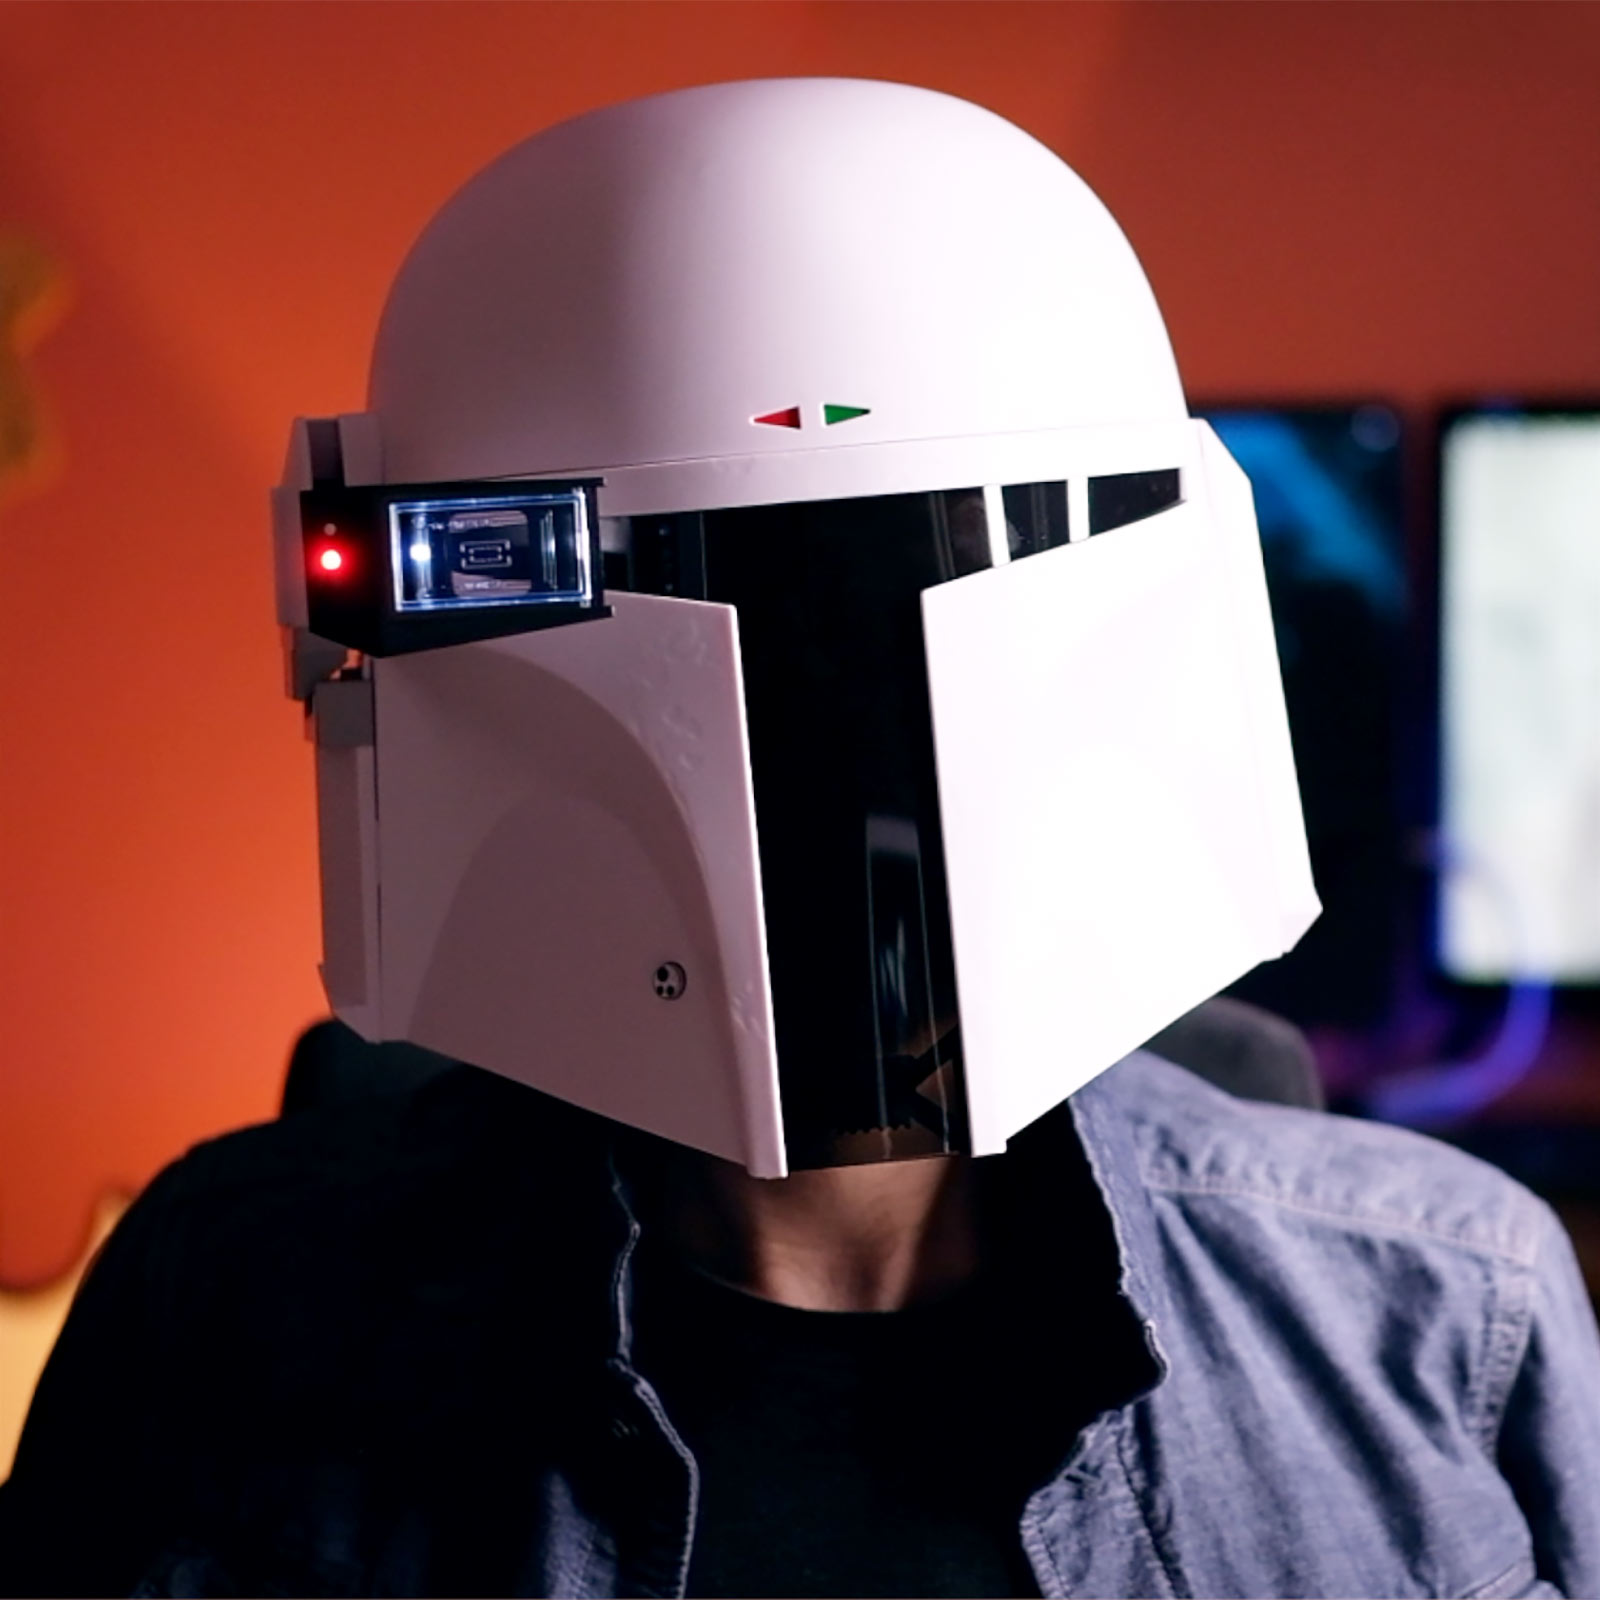 Star Wars - Boba Fett Prototype Helm Premium Replica met Lichteffecten